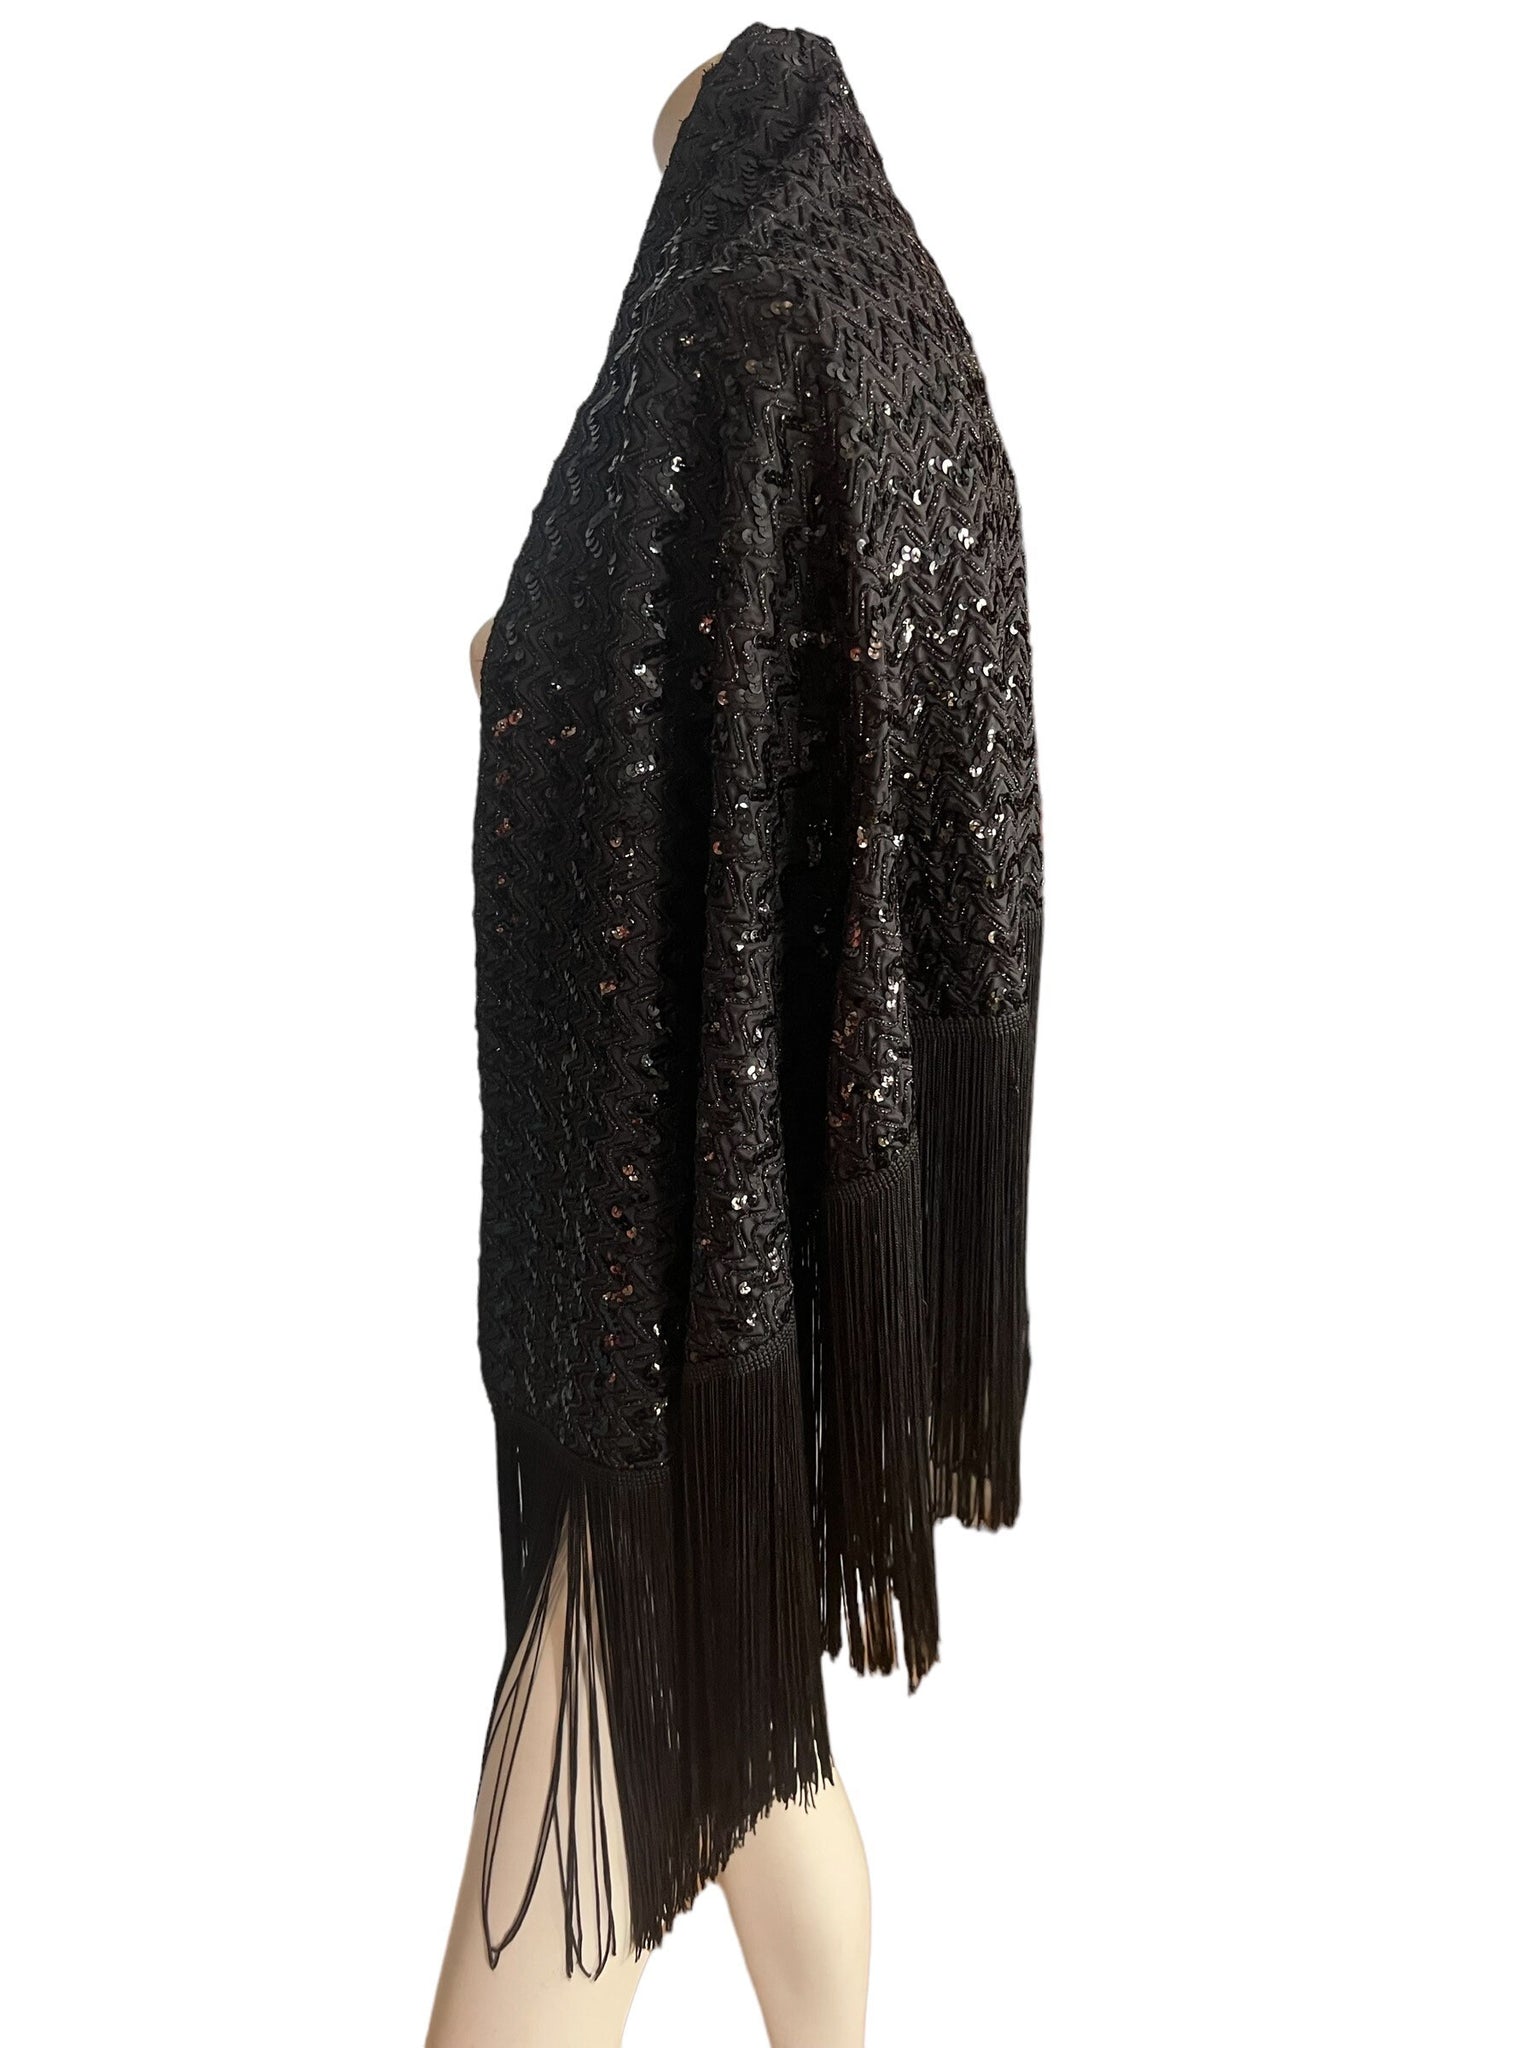 Vintage black sequin 70's shawl cape